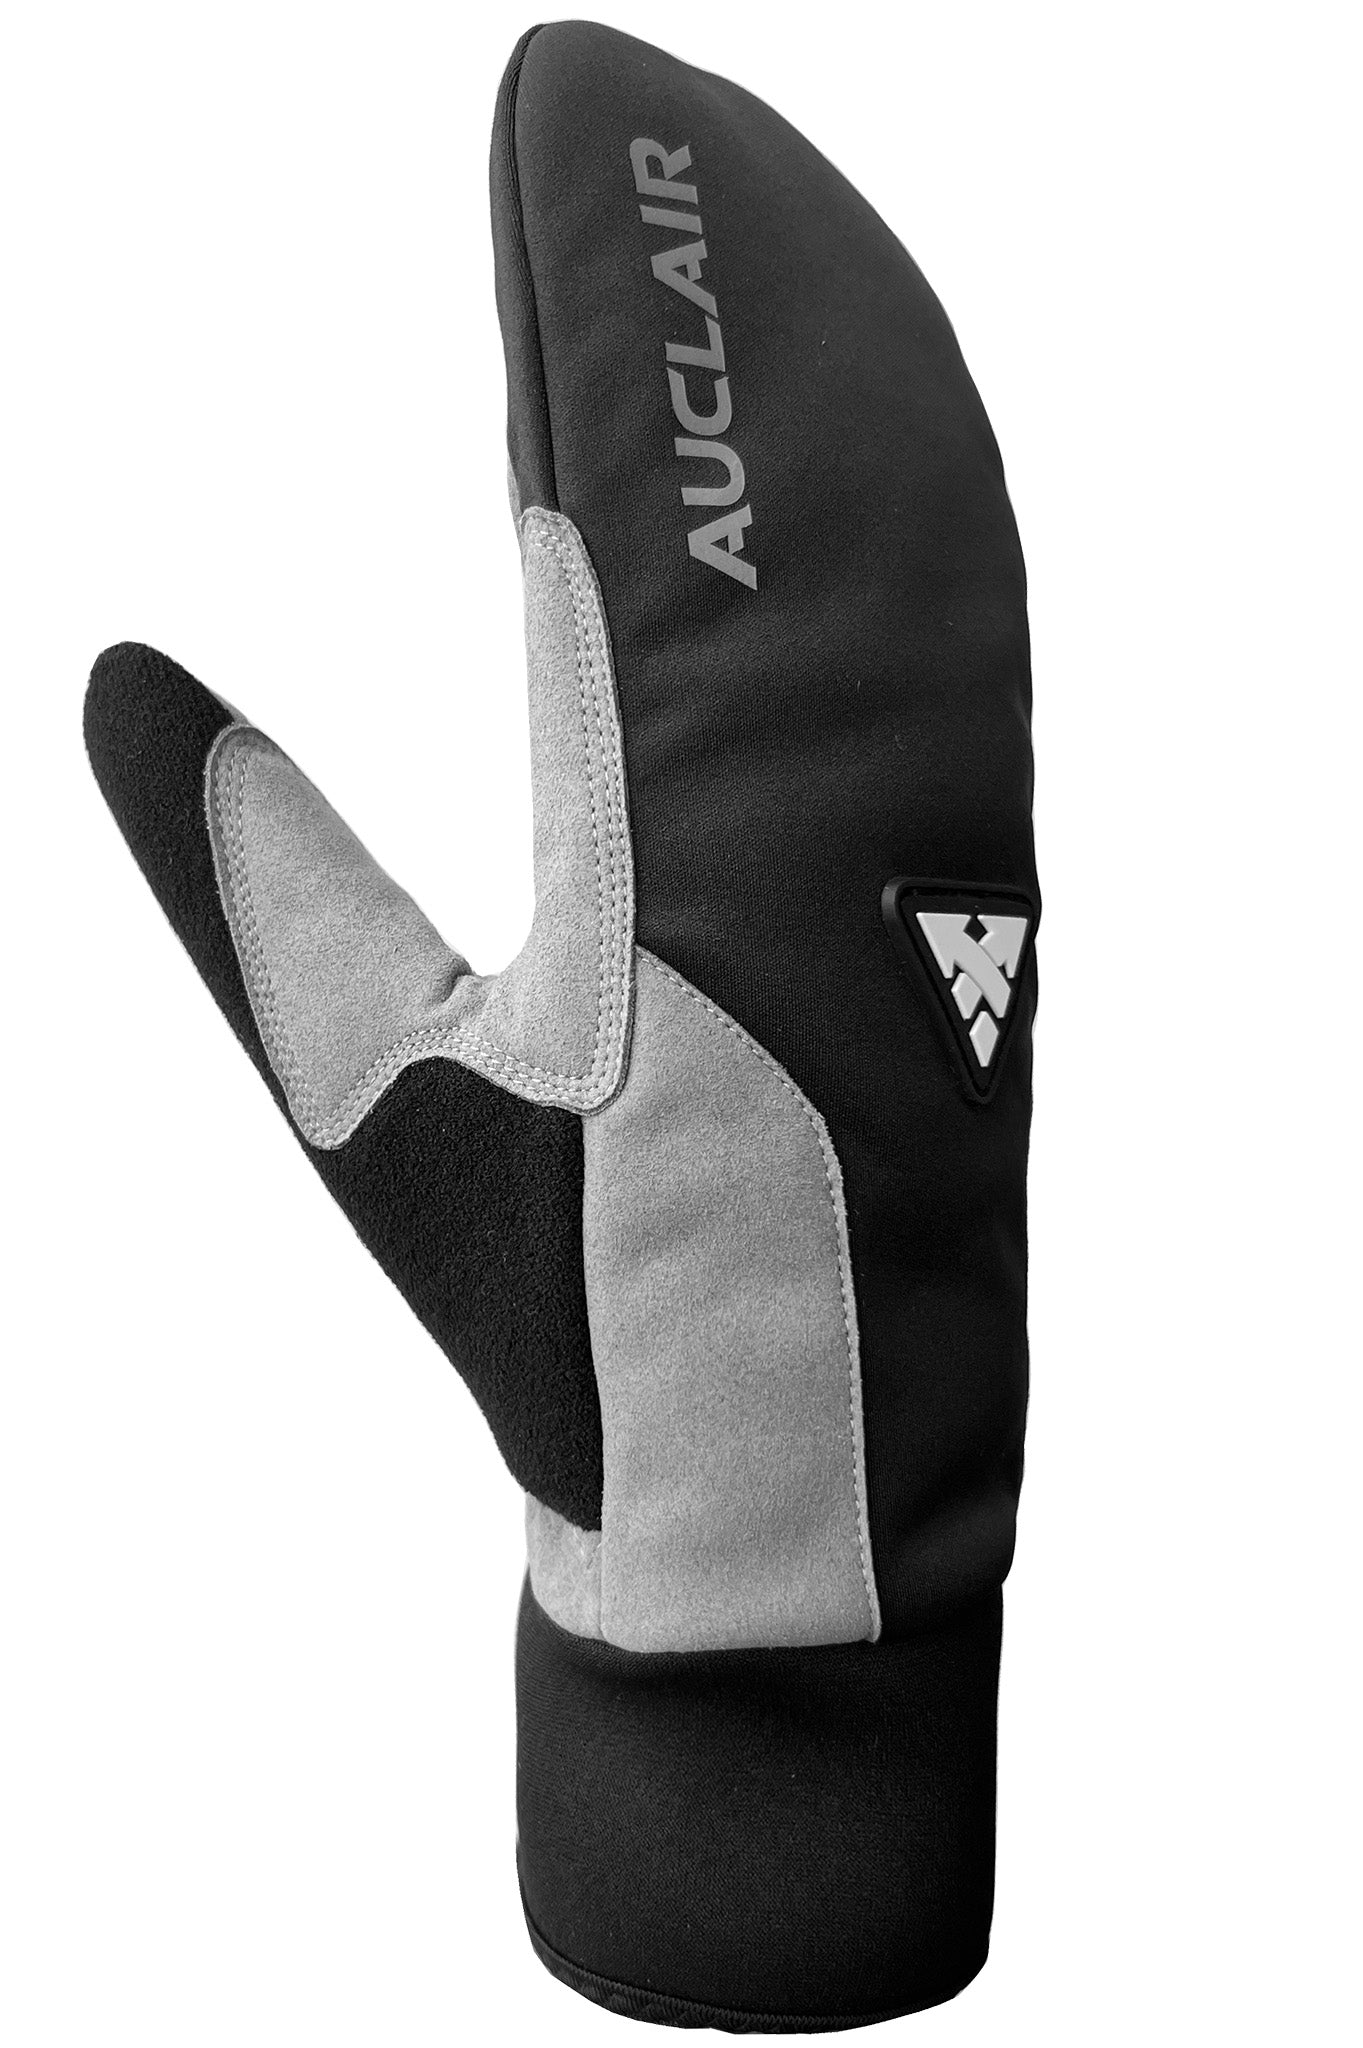 Stellar 2.0 Mitts - Women-Glove-Auclair-Auclair Sports